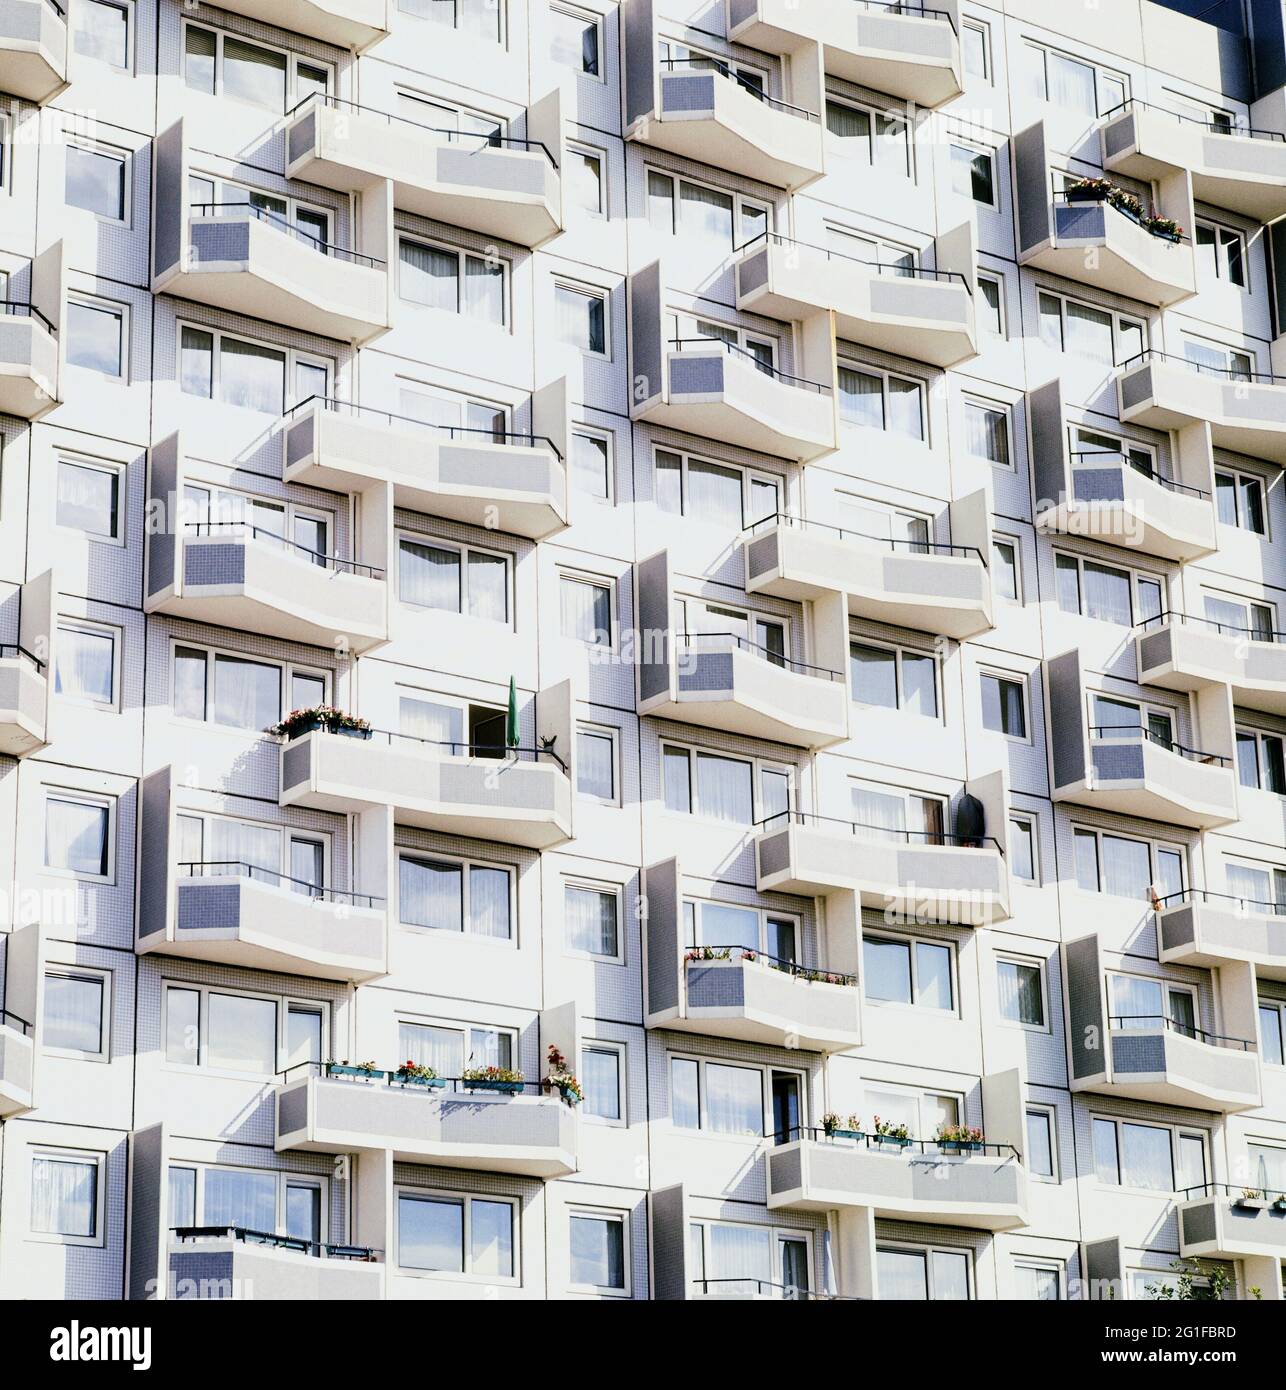 Arquitectura, edificio de varios pisos, finca de viviendas 'Osdorfer Born' en Hamburgo, 1971, ADICIONAL-DERECHOS-LIQUIDACIÓN-INFO-NO DISPONIBLE Foto de stock